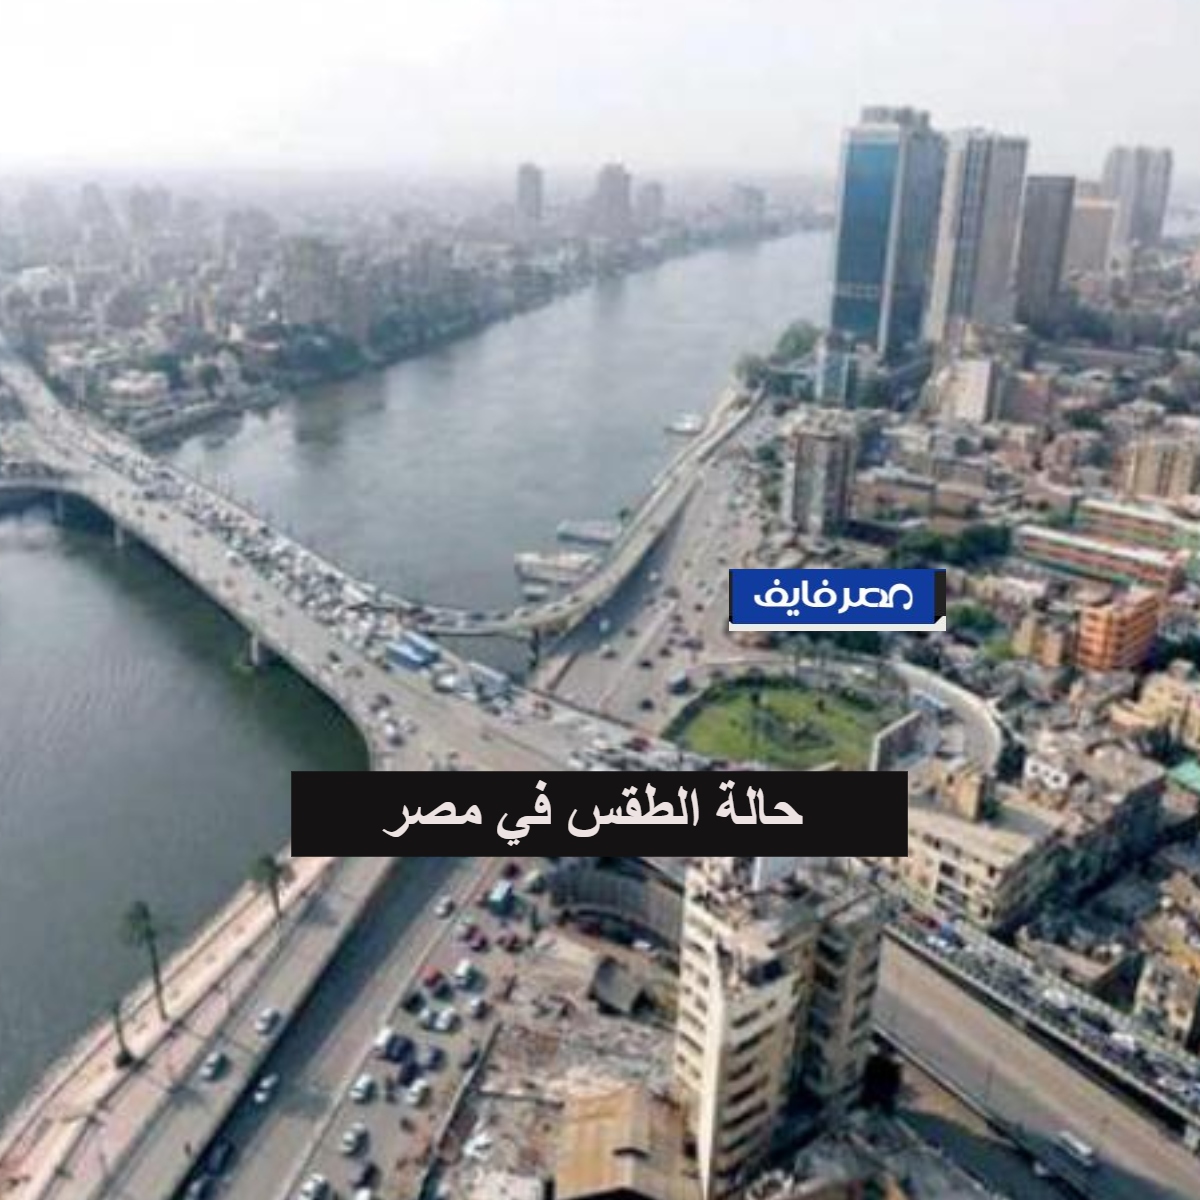 أحوال الطقس في مصر اليوم هيئة الأرصاد الجوية